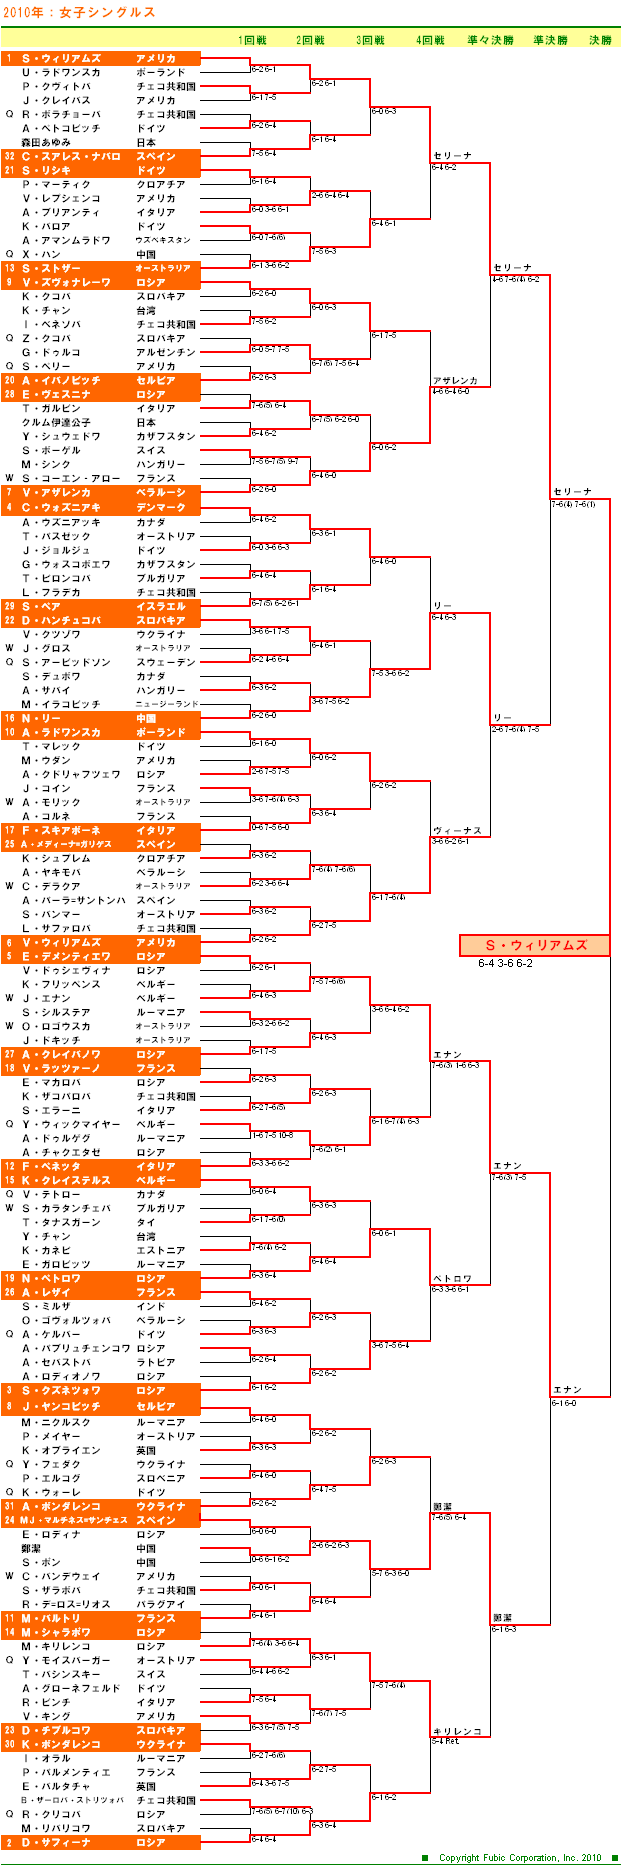 全豪オープンテニス2010　女子シングルスドロー表